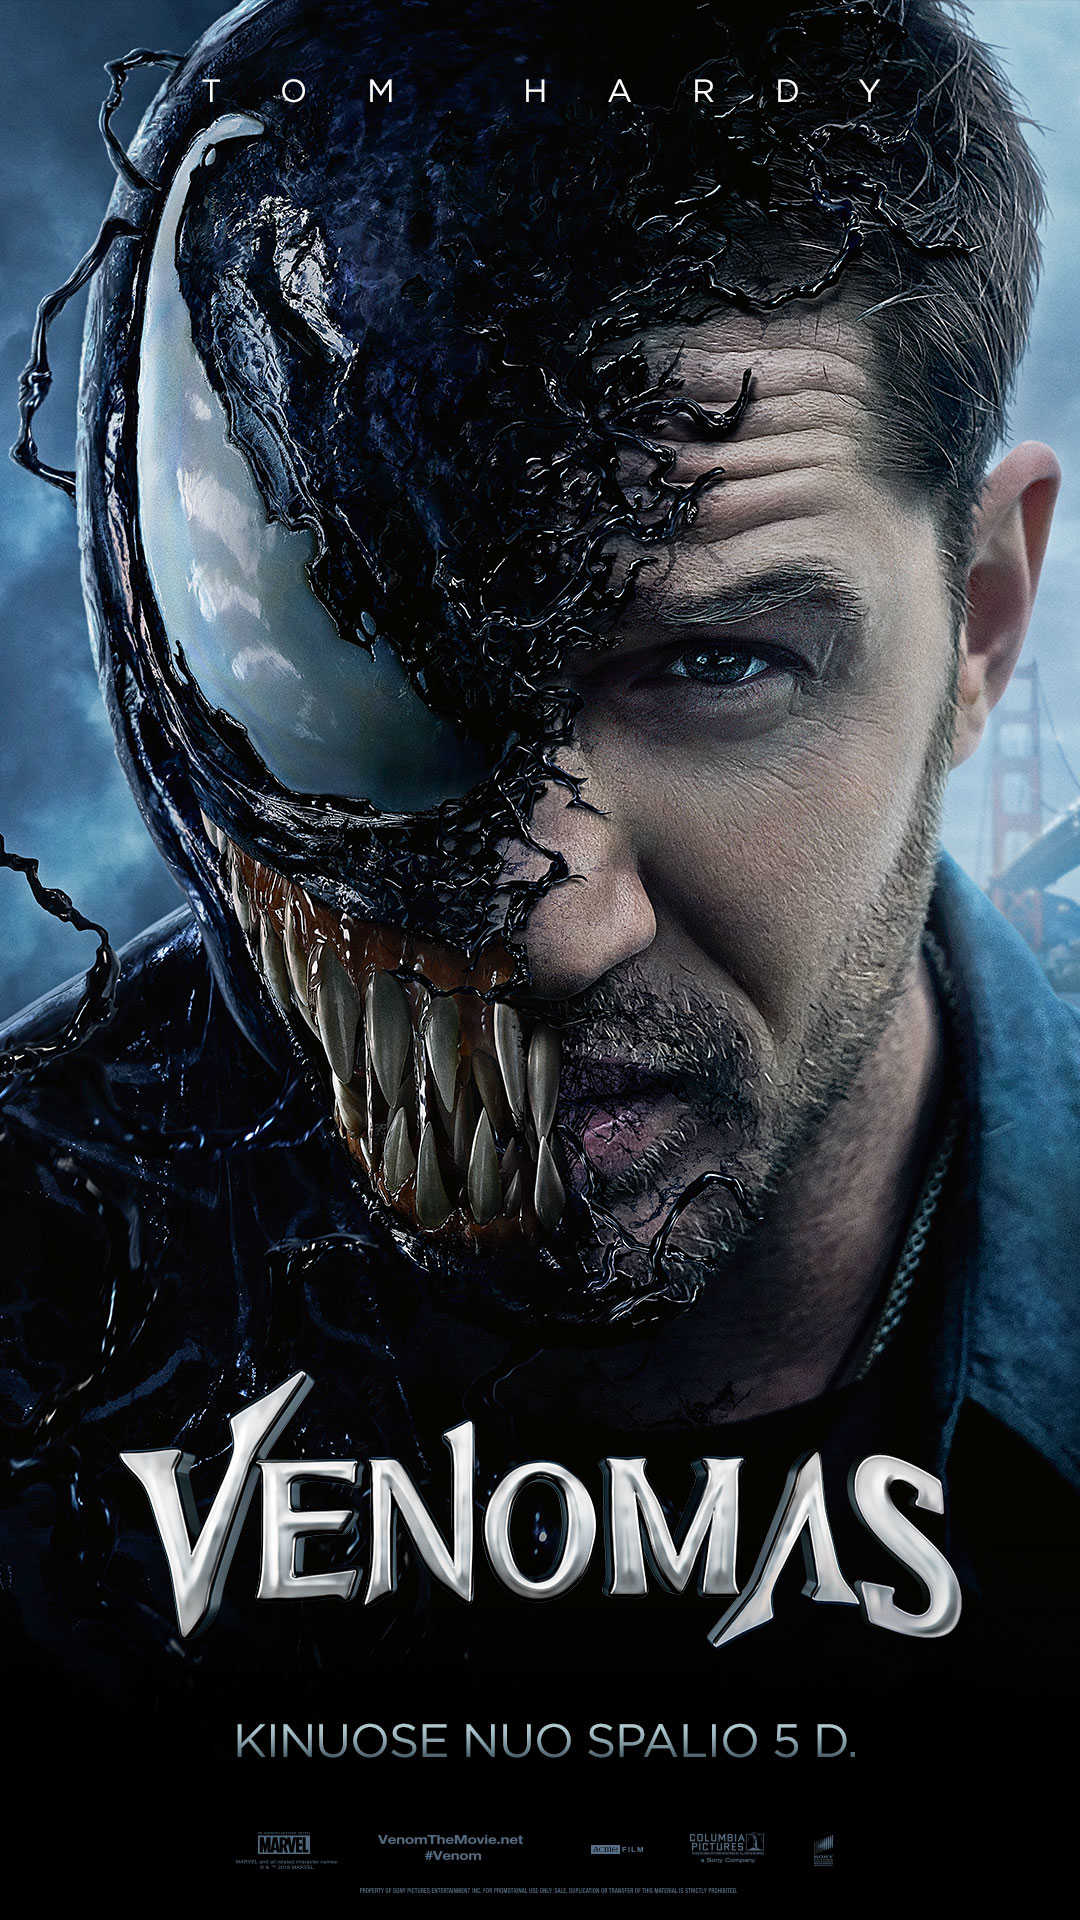 Venomas (Venom)